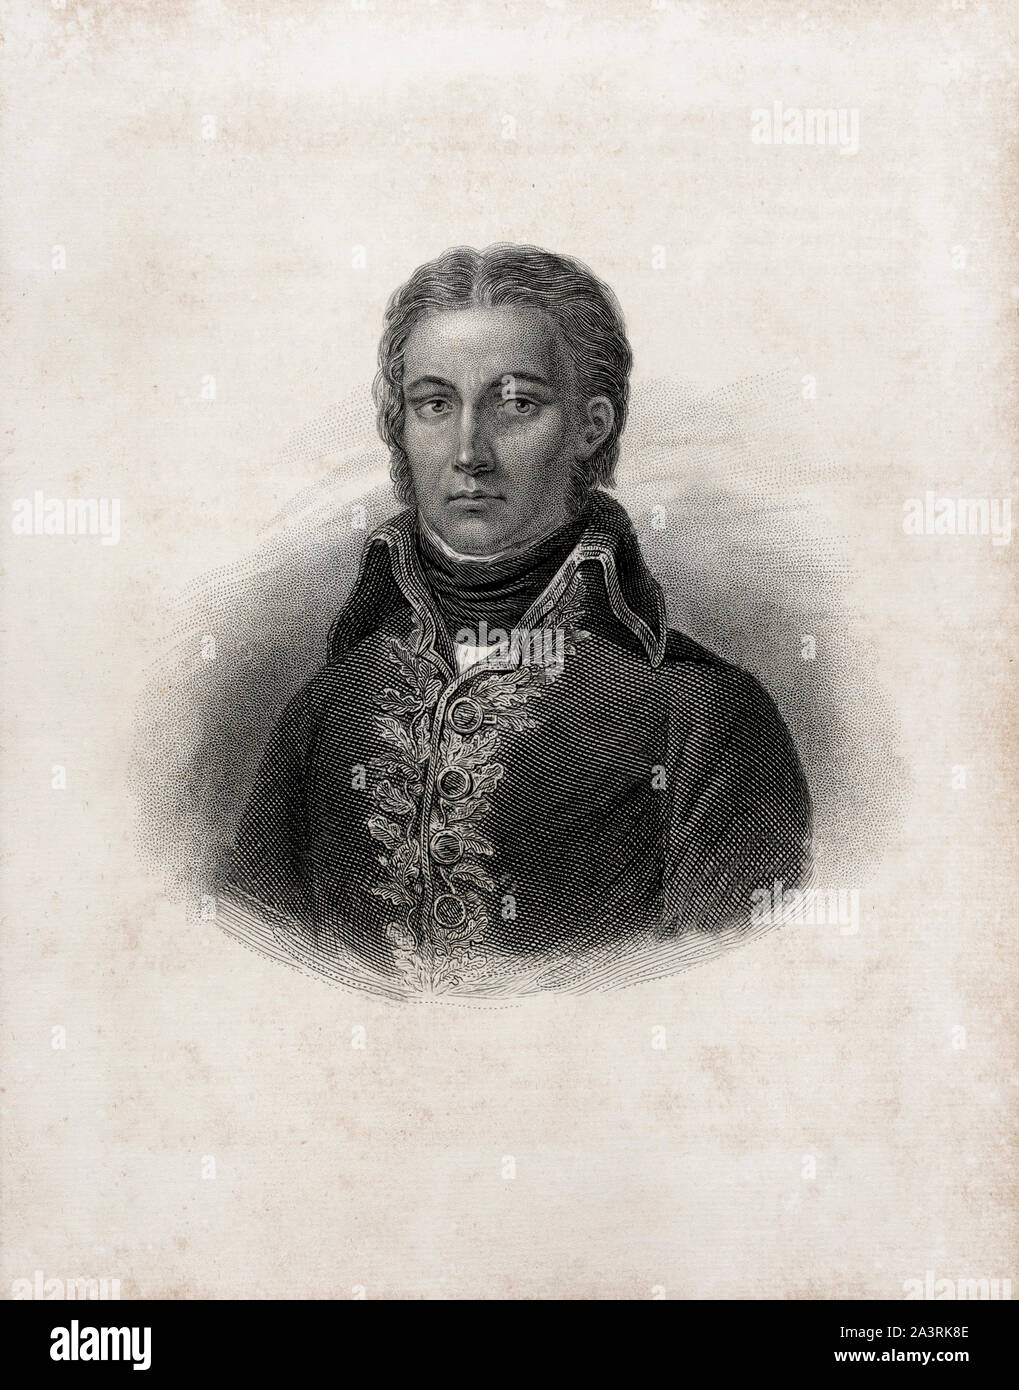 Jean Victor Marie Moreau (1763 - 1813) è stato un generale francese che ha contribuito a Napoleone Bonaparte al potere, ma più successivamente è diventato un rivale e fu bandito per la U Foto Stock